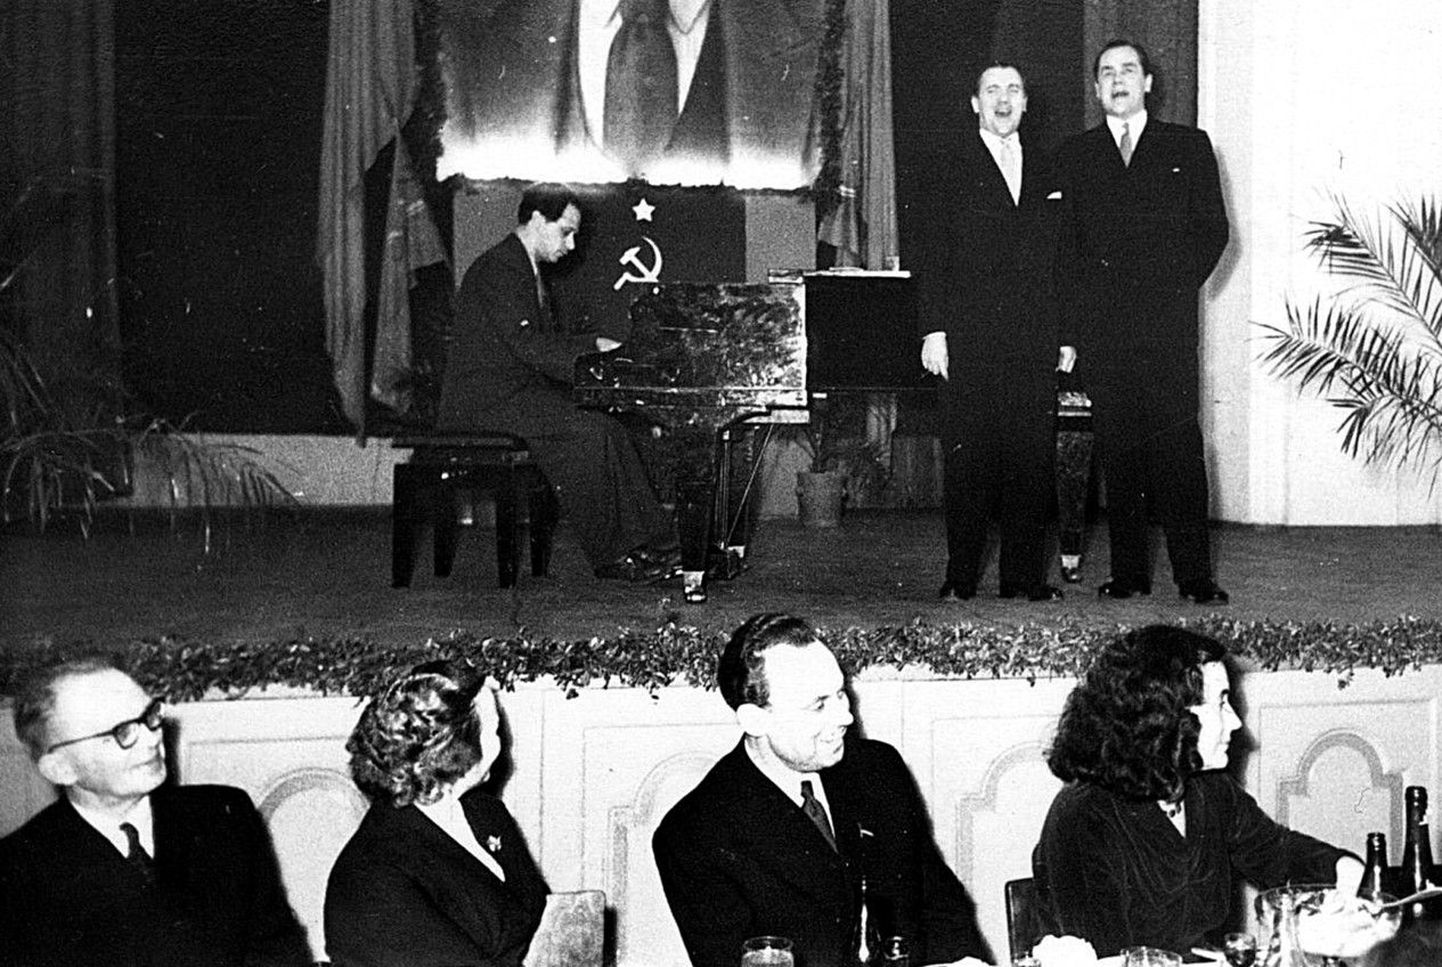 Ajastutruud pildid:
 artiklit illustreerivad varem avaldamata fotod 1957. aasta oktoobrist, mil Tallinna Poliitharidusmaja saalis toimus revolutsiooniveteranide kohtumisõhtu noore põlvkonna loomeinimestega. Esinevad Viktor Gurjev ja Georg Ots, klaveril saadab Gennadi Podelski.